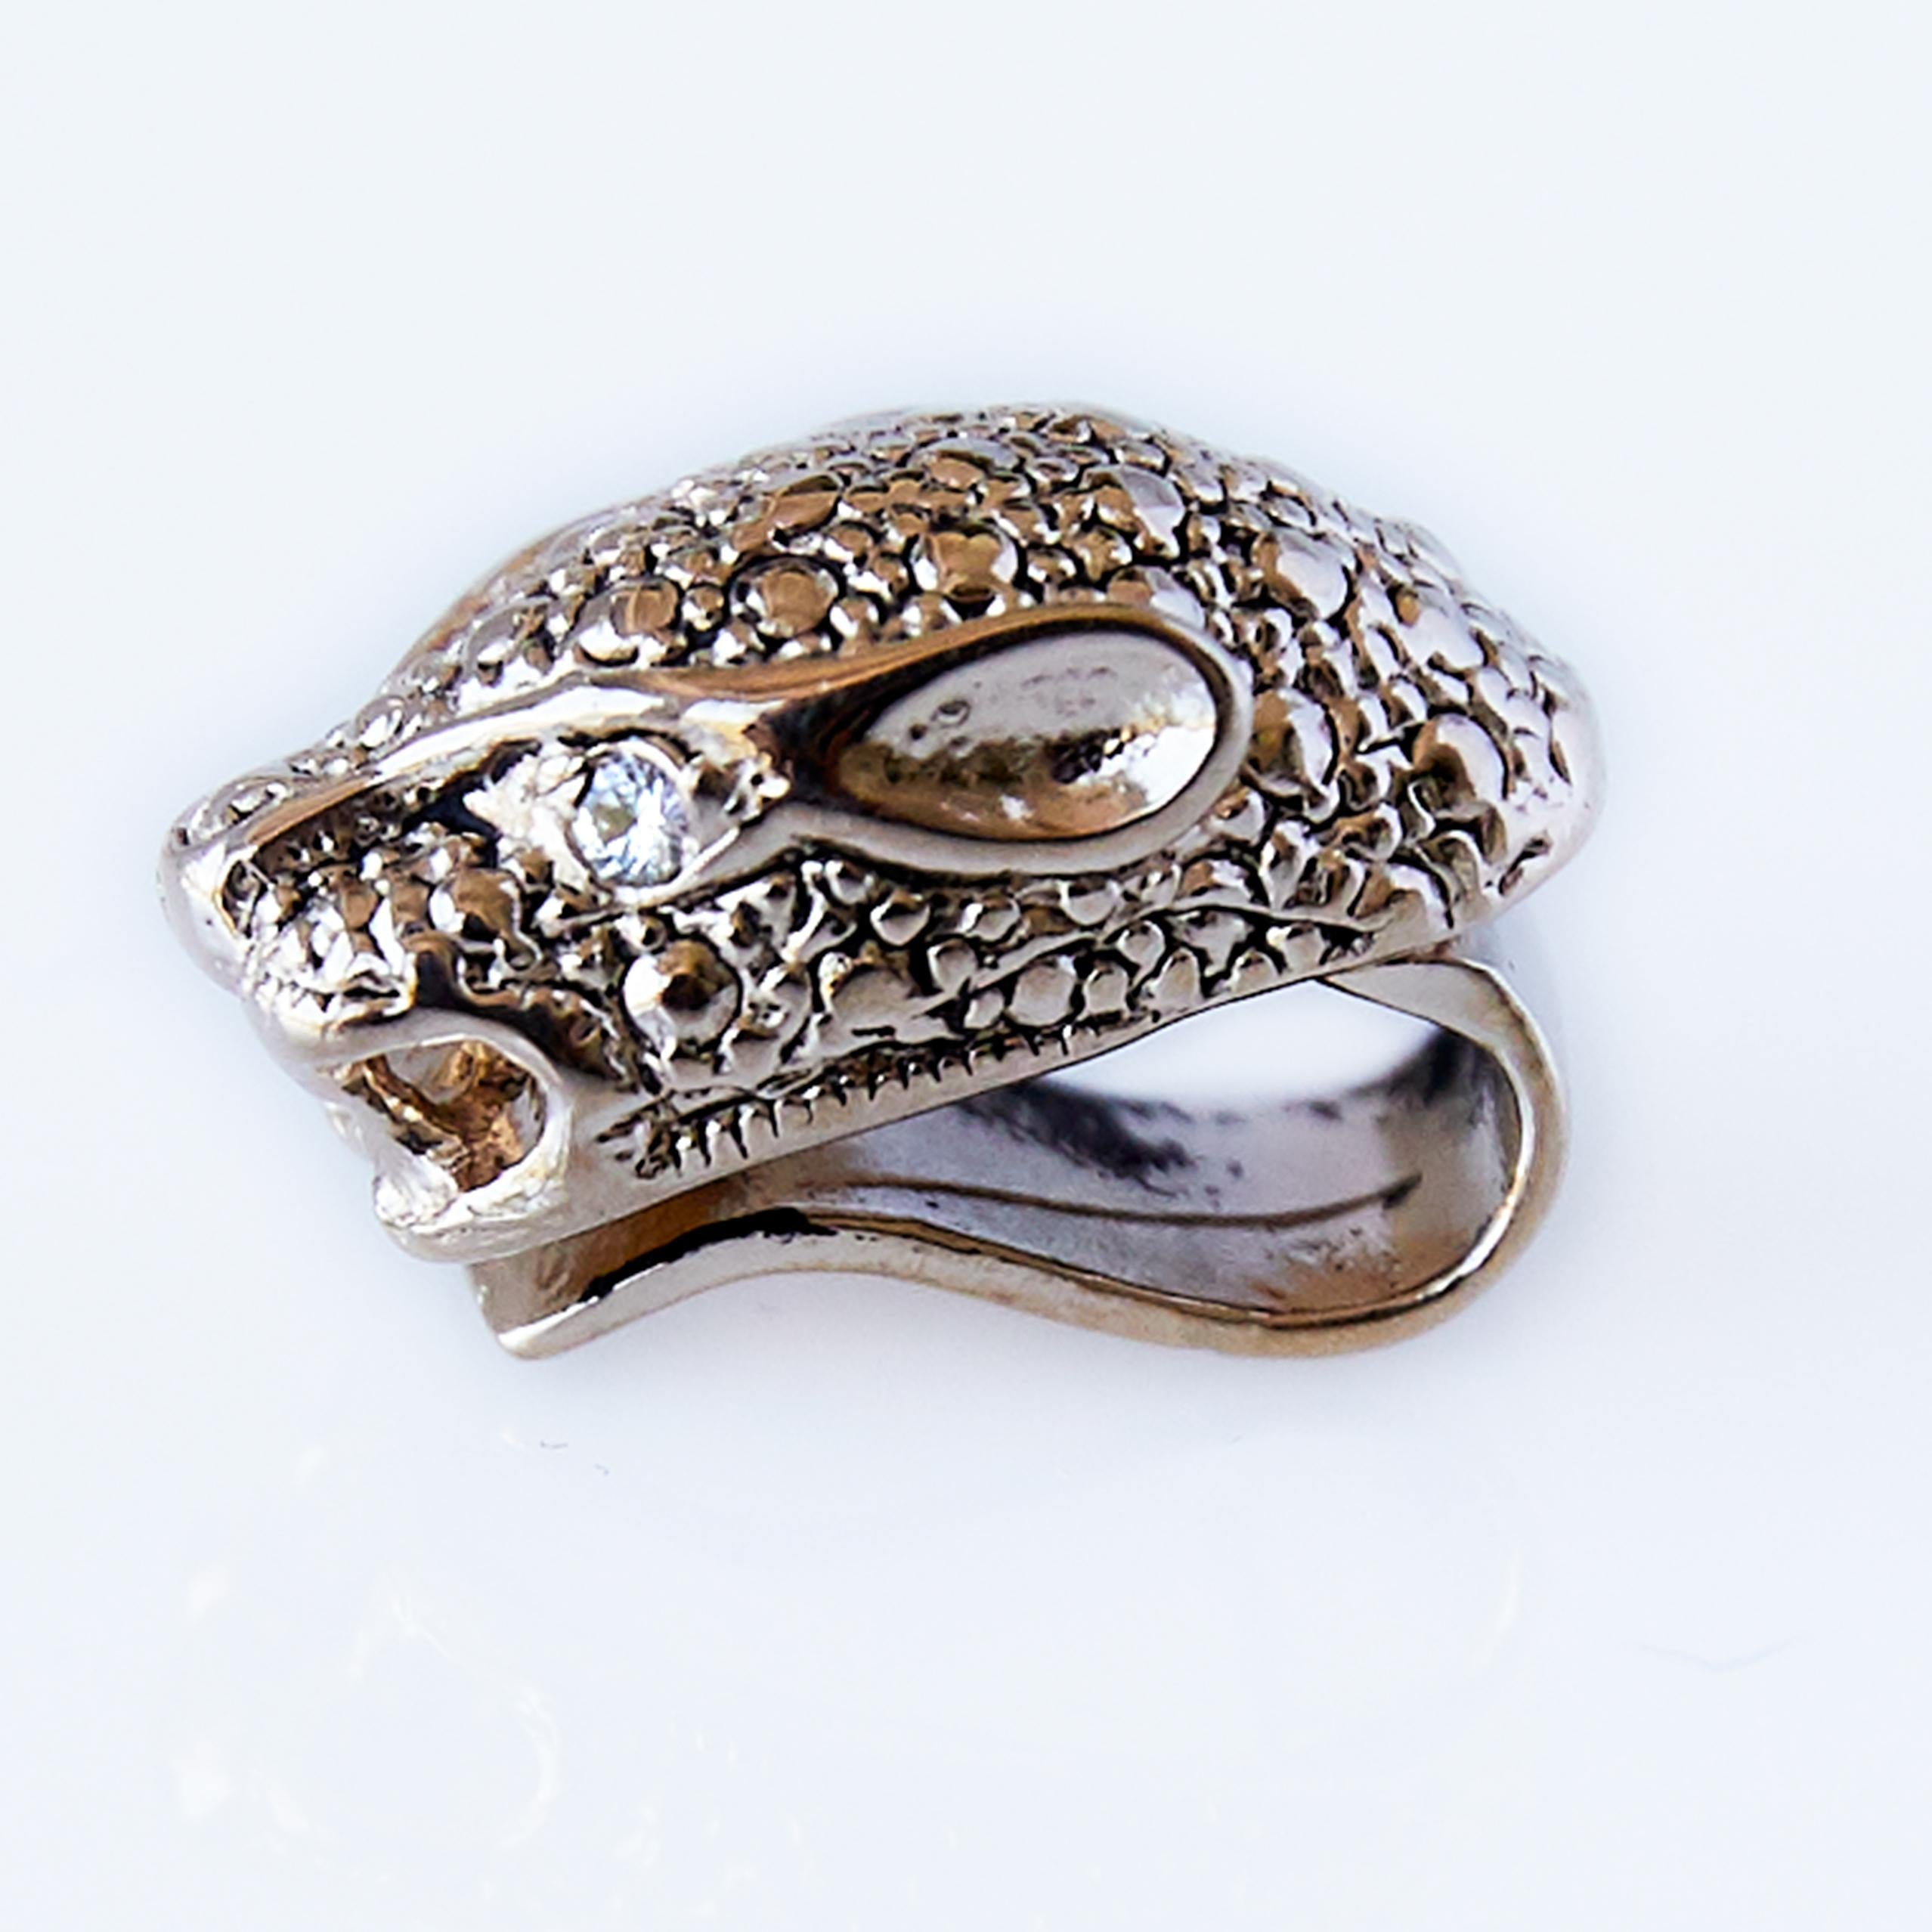 jaguar earrings